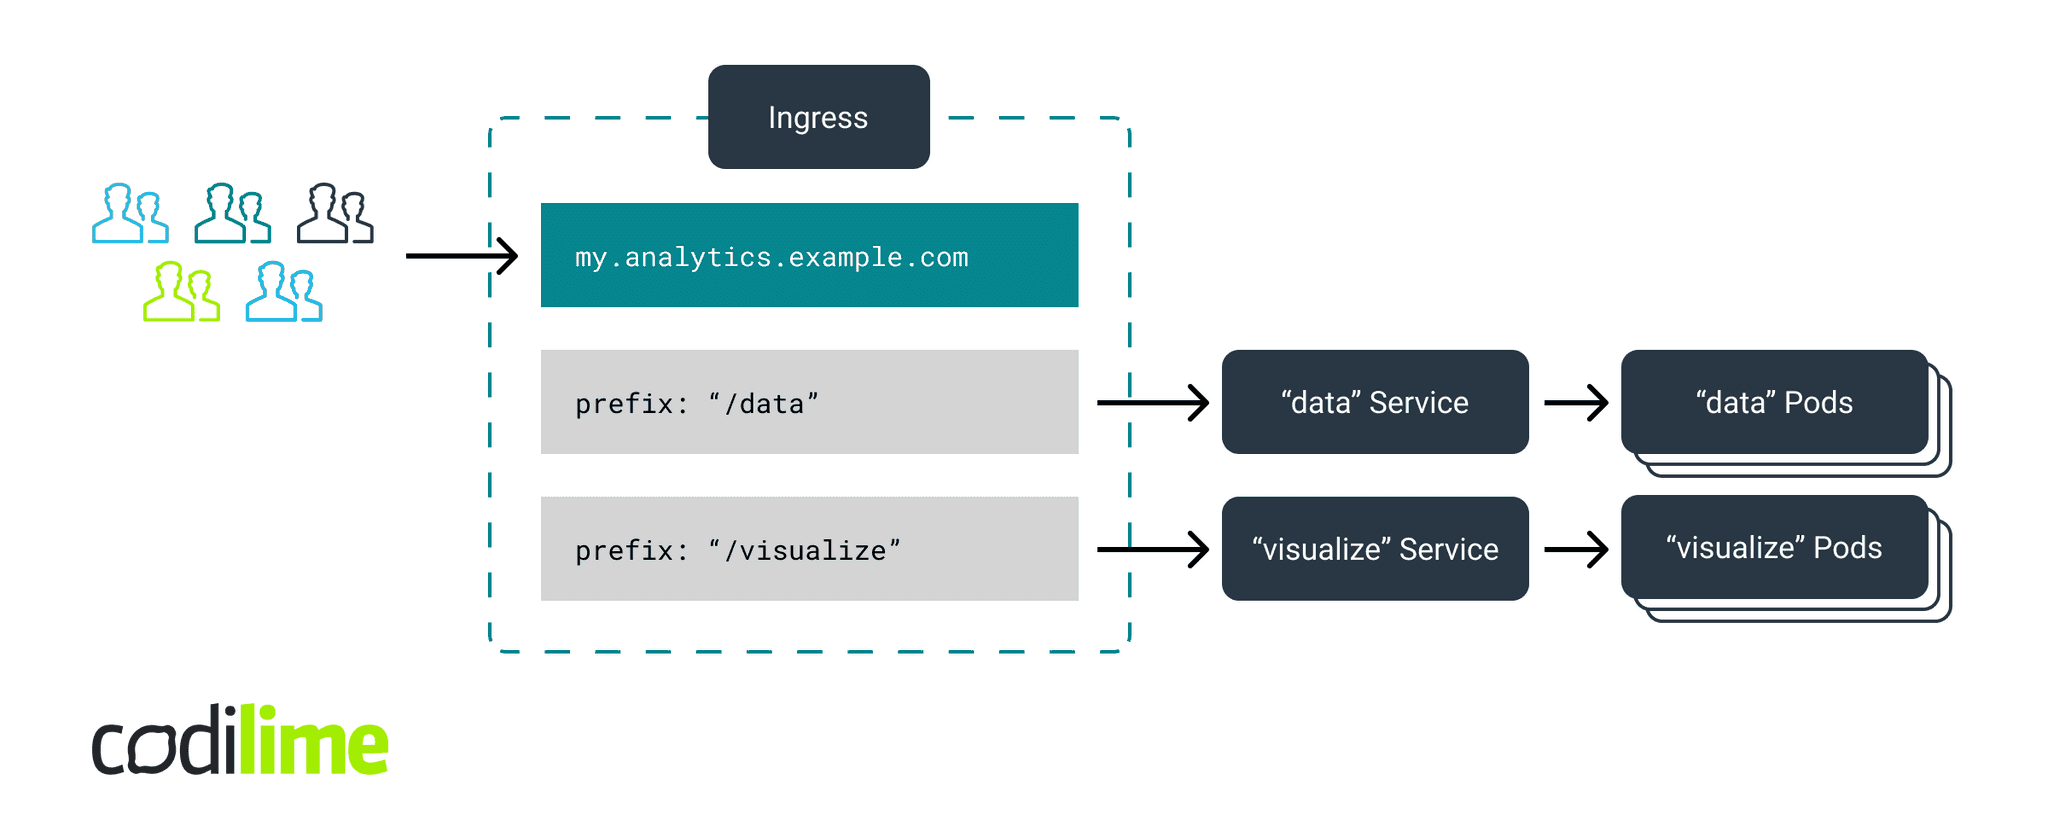 Kubernetes Ingress-based configuration scheme